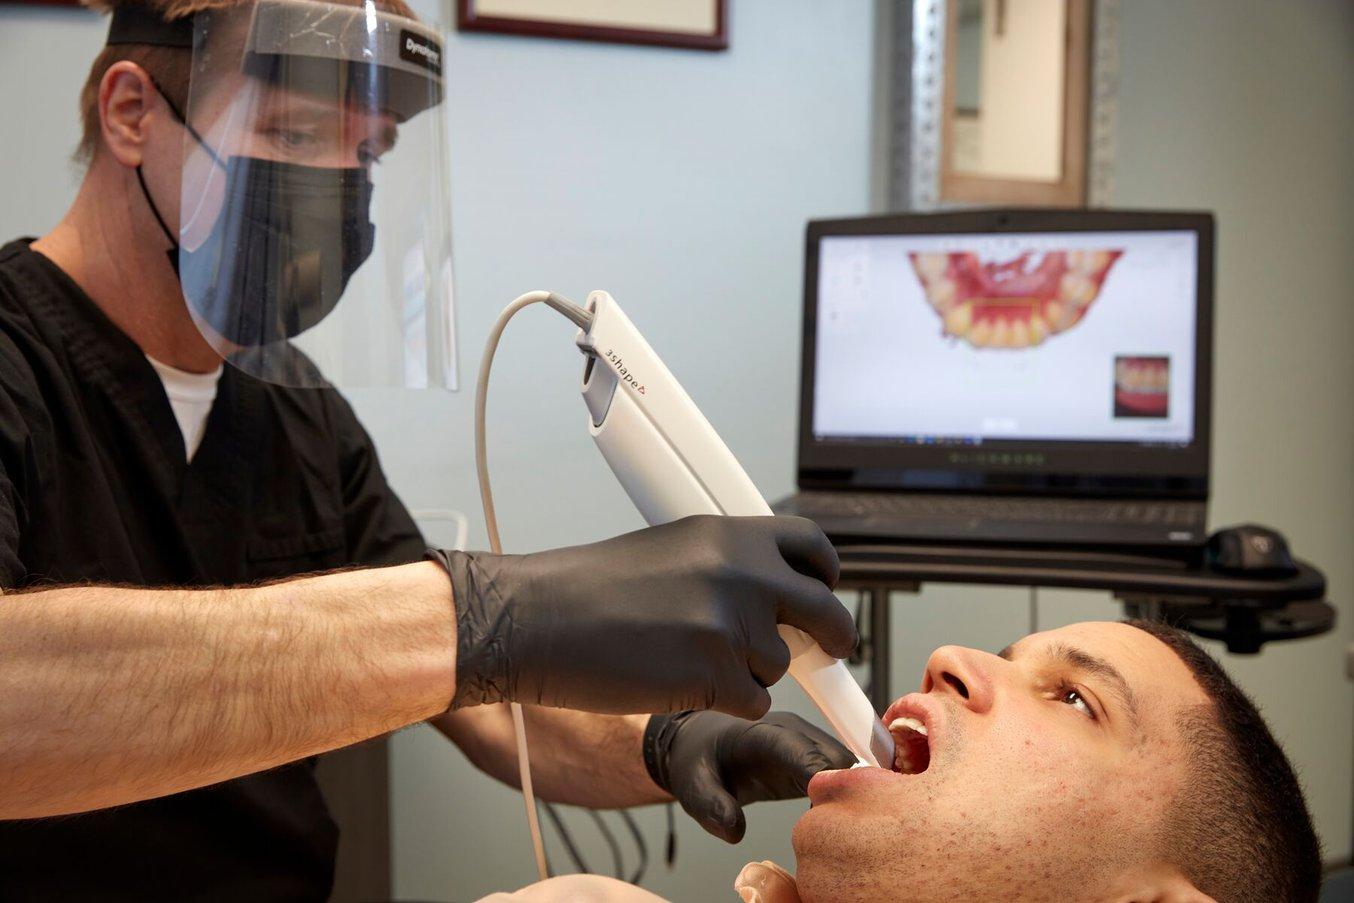 Zahnmedizinische Intraoralscanner werden in zahnärztlichen Praxen immer mehr zum Standard und nehmen den Platz der herkömmlichen, unangenehmen Abdrucknahme ein. Mithilfe der gesammelten digitalen Daten werden dentale Anwendungen entworfen.